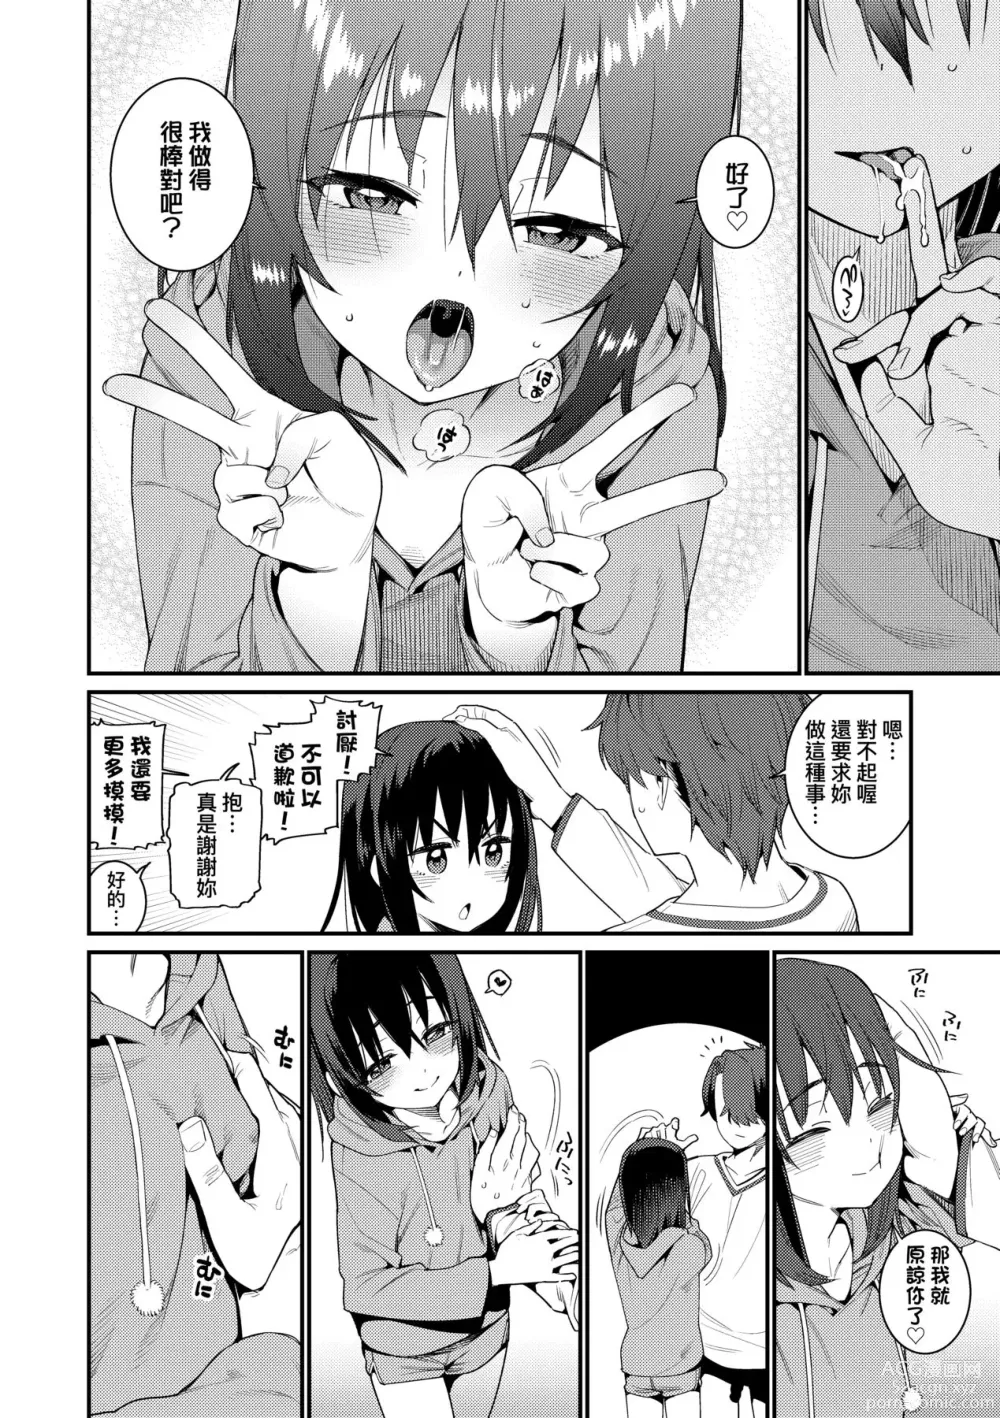 Page 199 of manga Itoshiki Wagaya (decensored)